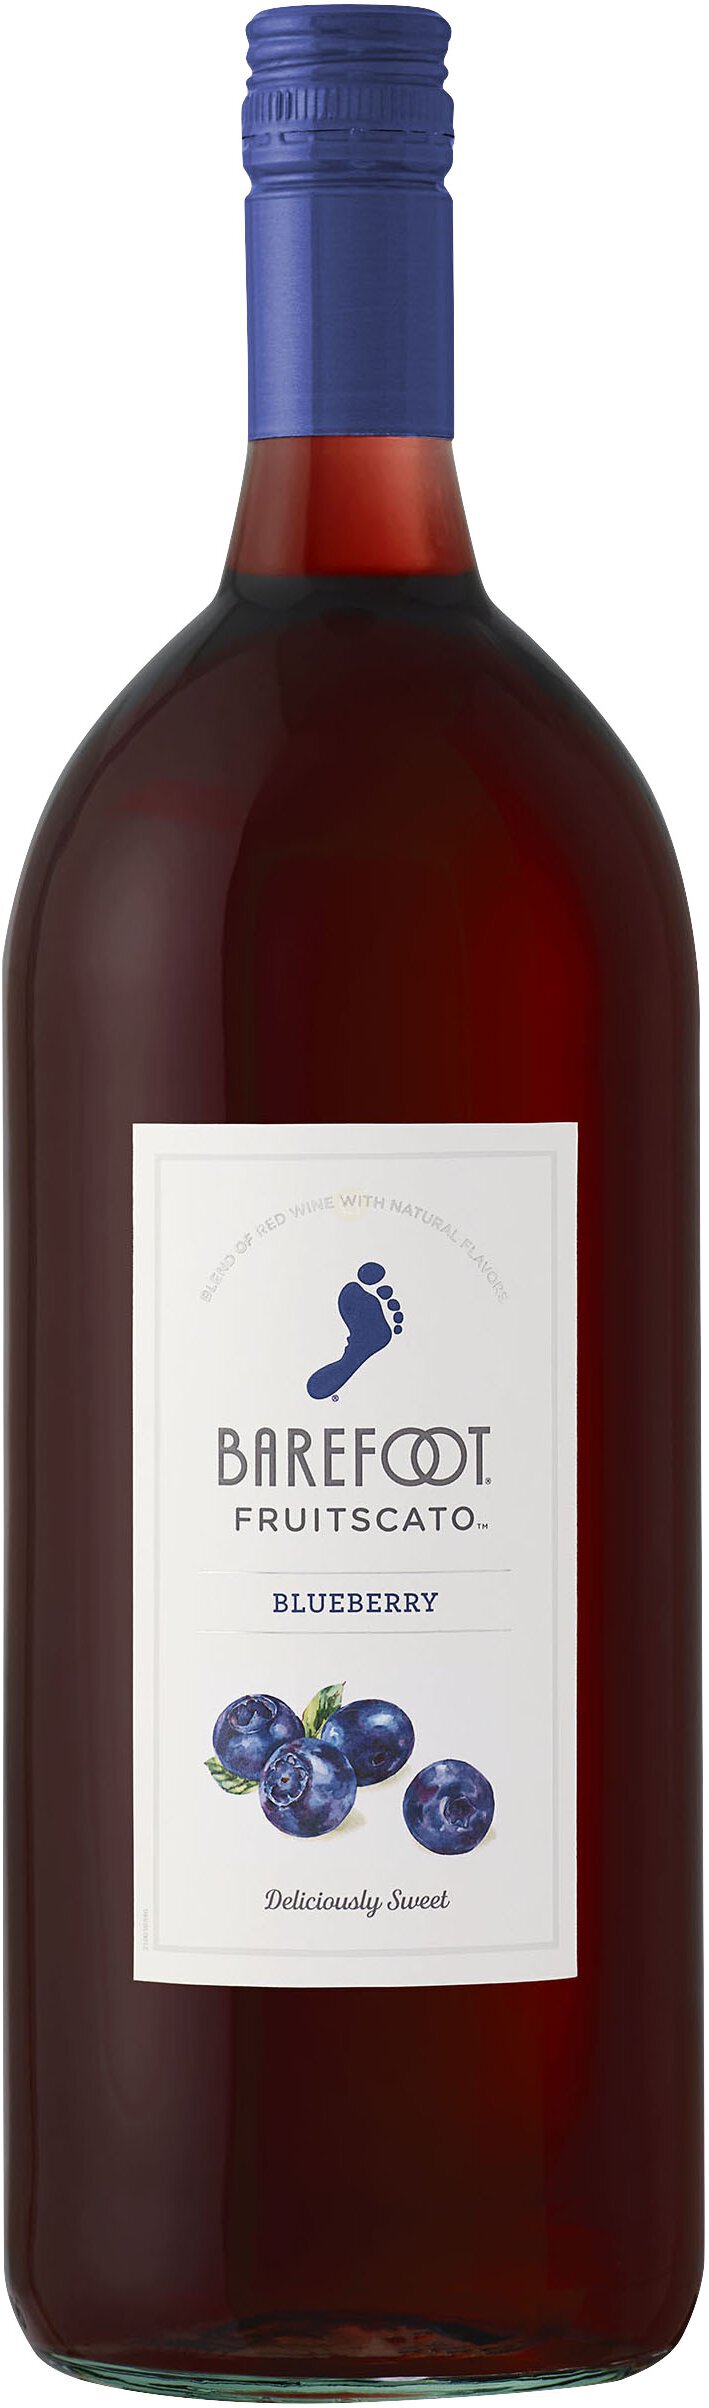 Barefoot Fruitscato Blueberry 750 ml